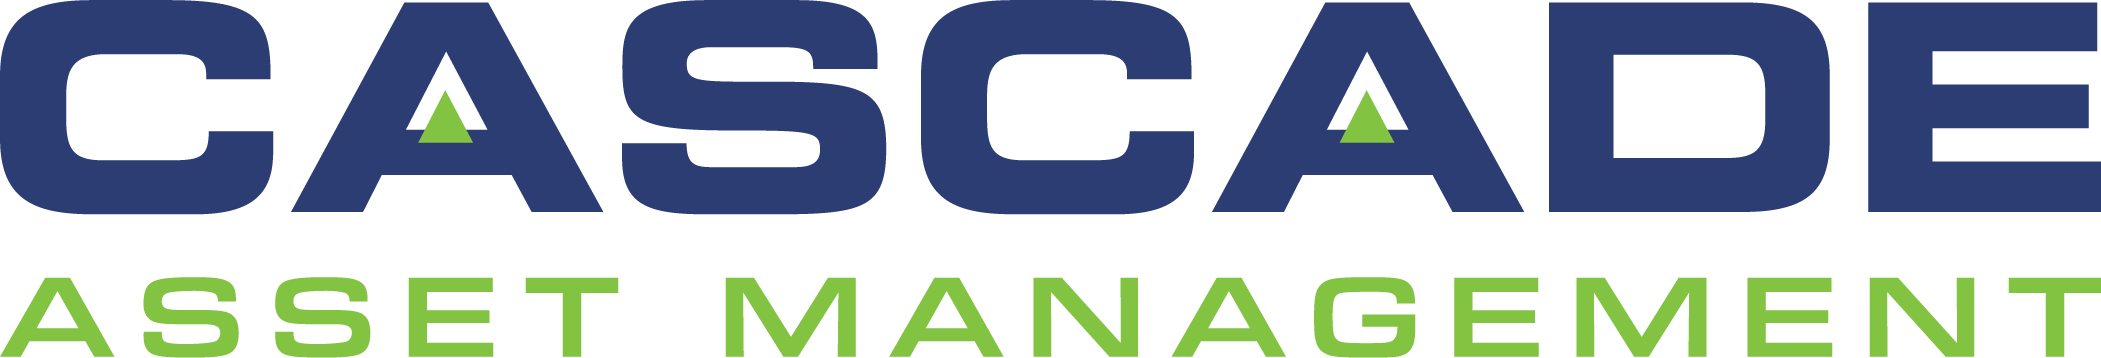 Cascade Asset Management Logo